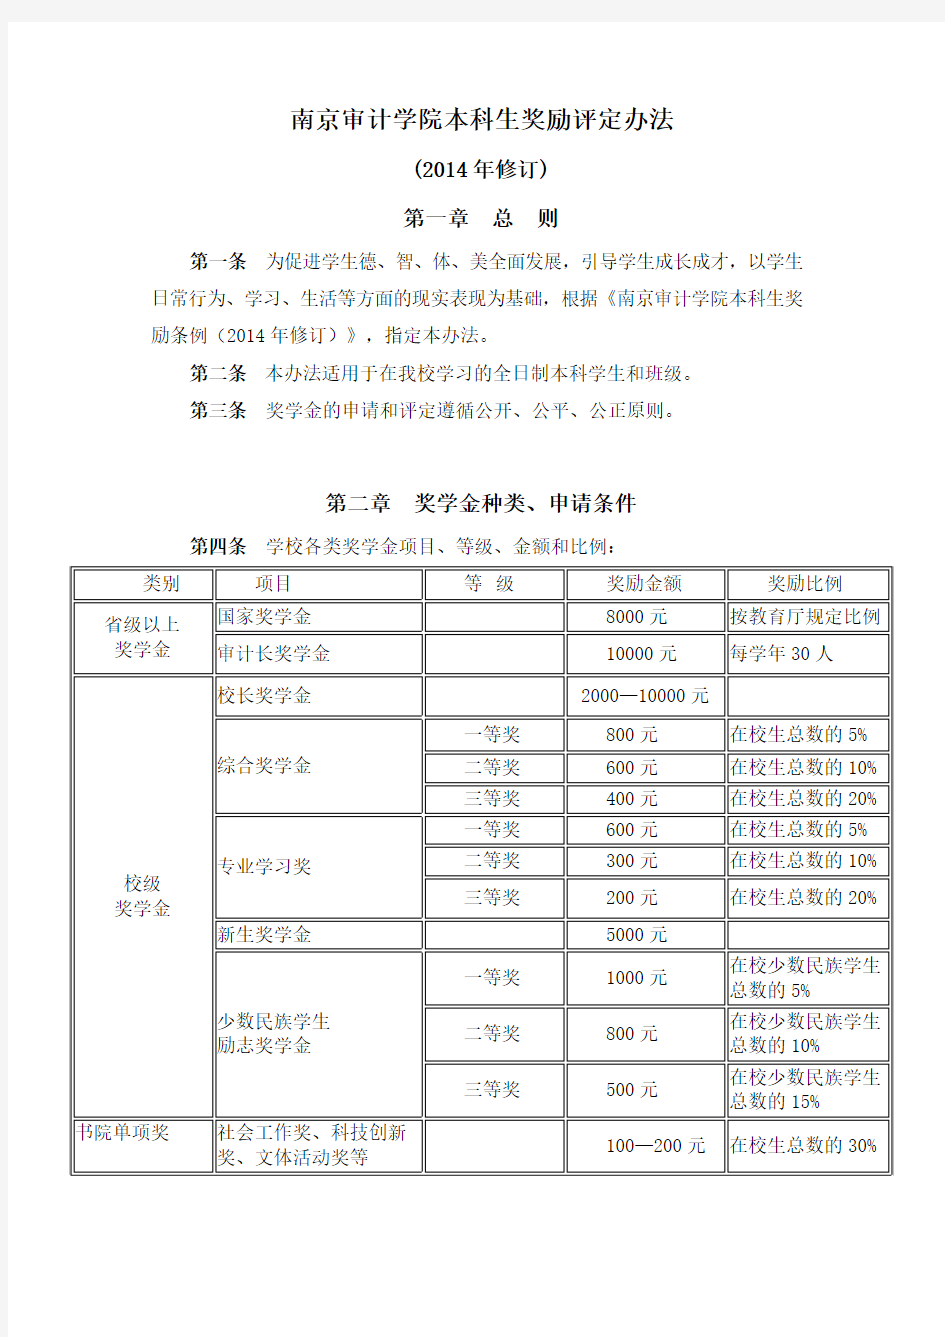 南京审计学院本科生奖励评定办法(2014年修订)